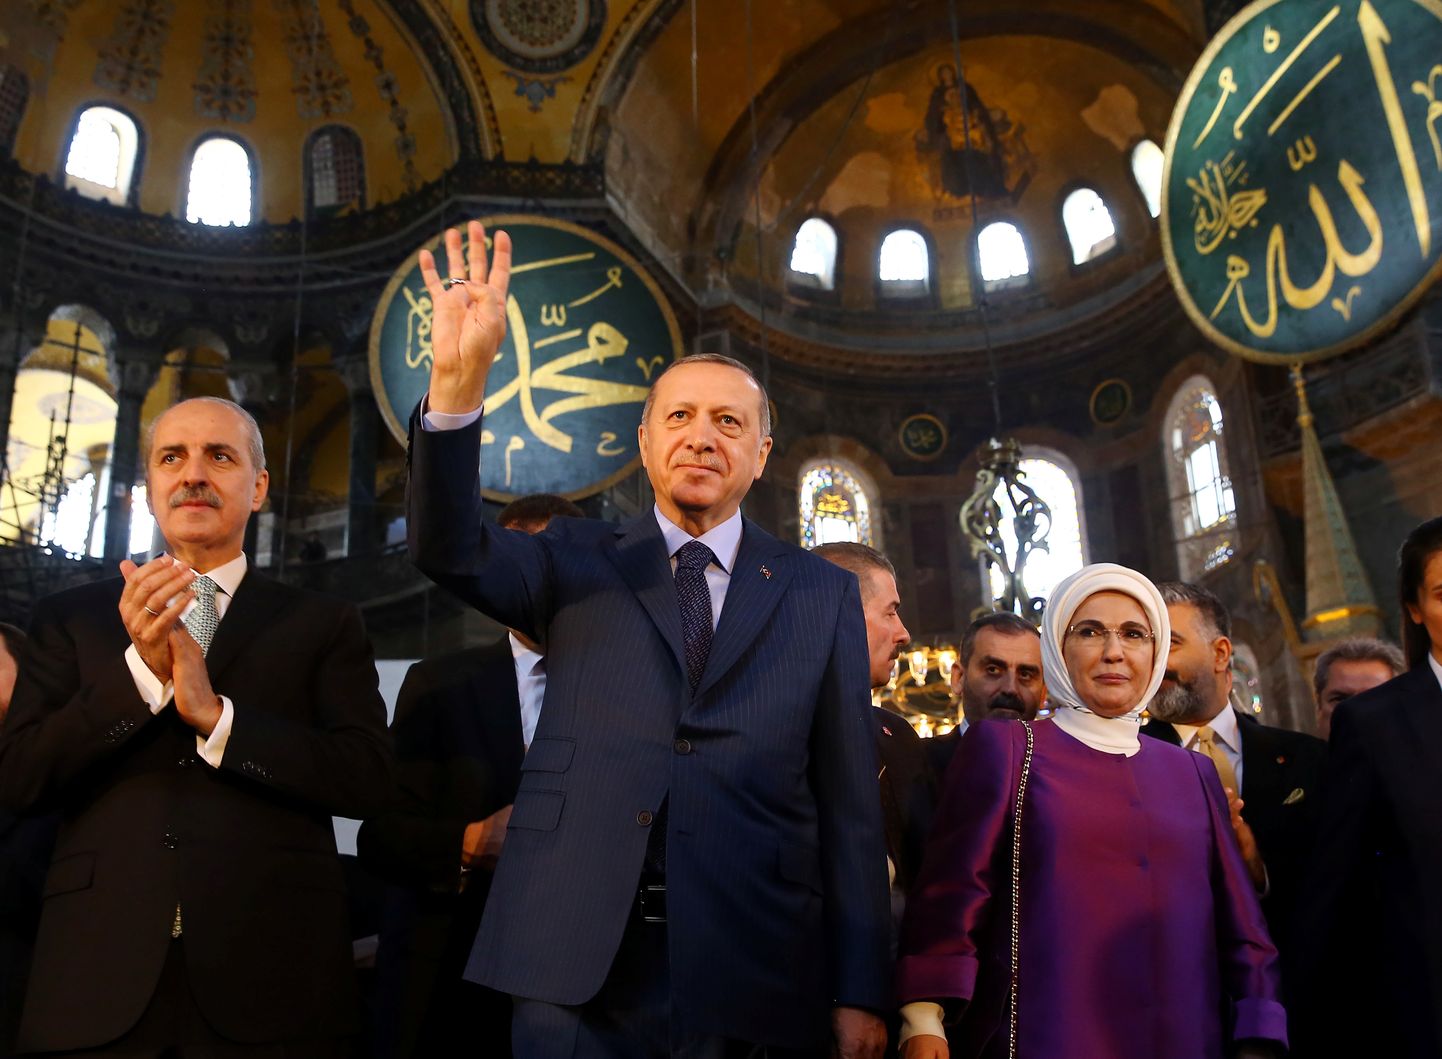 Türgi president Recep Tayyip Erdoğan oma naise Eminega Hagia Sophia muuseumis.